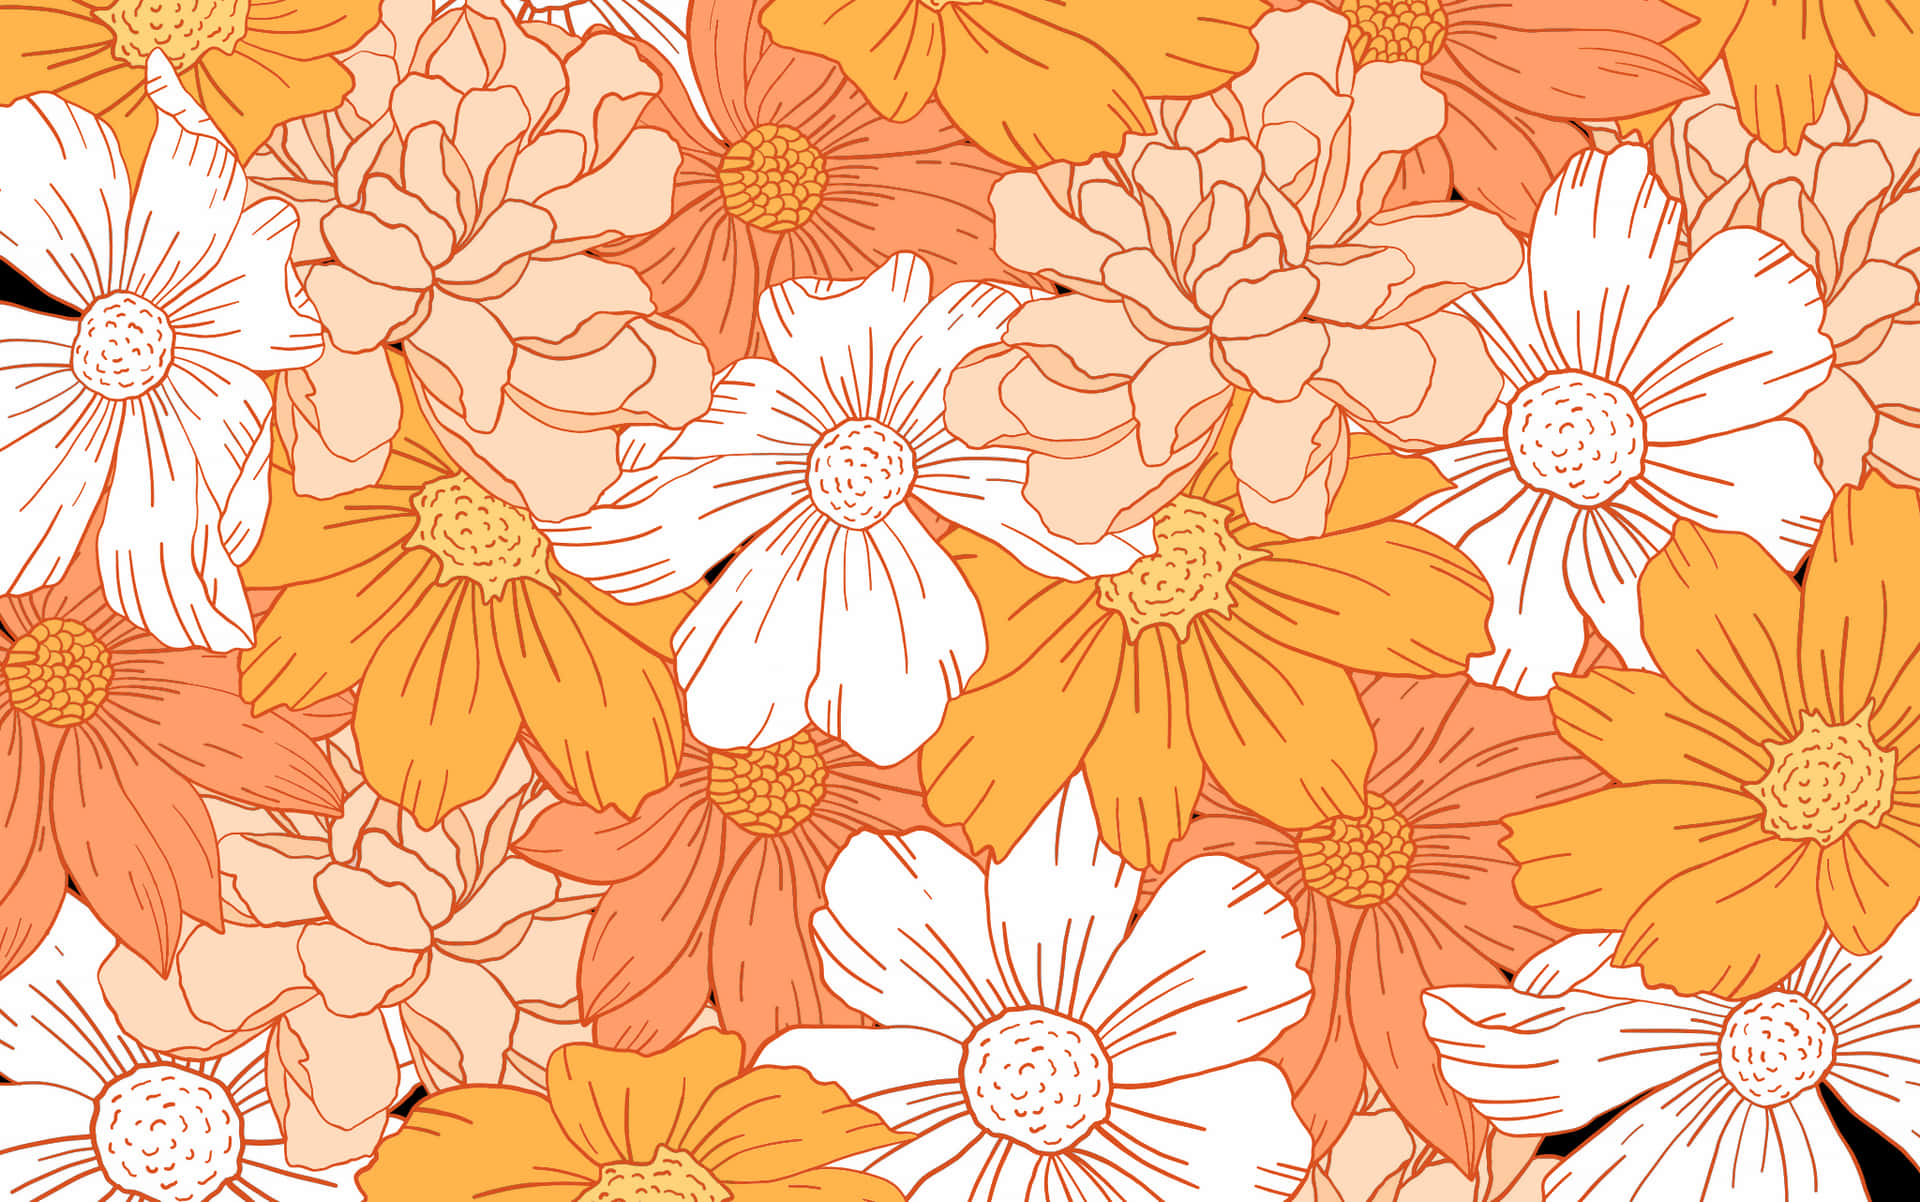 Blomsterpå En Hvid Og Orange Baggrund.